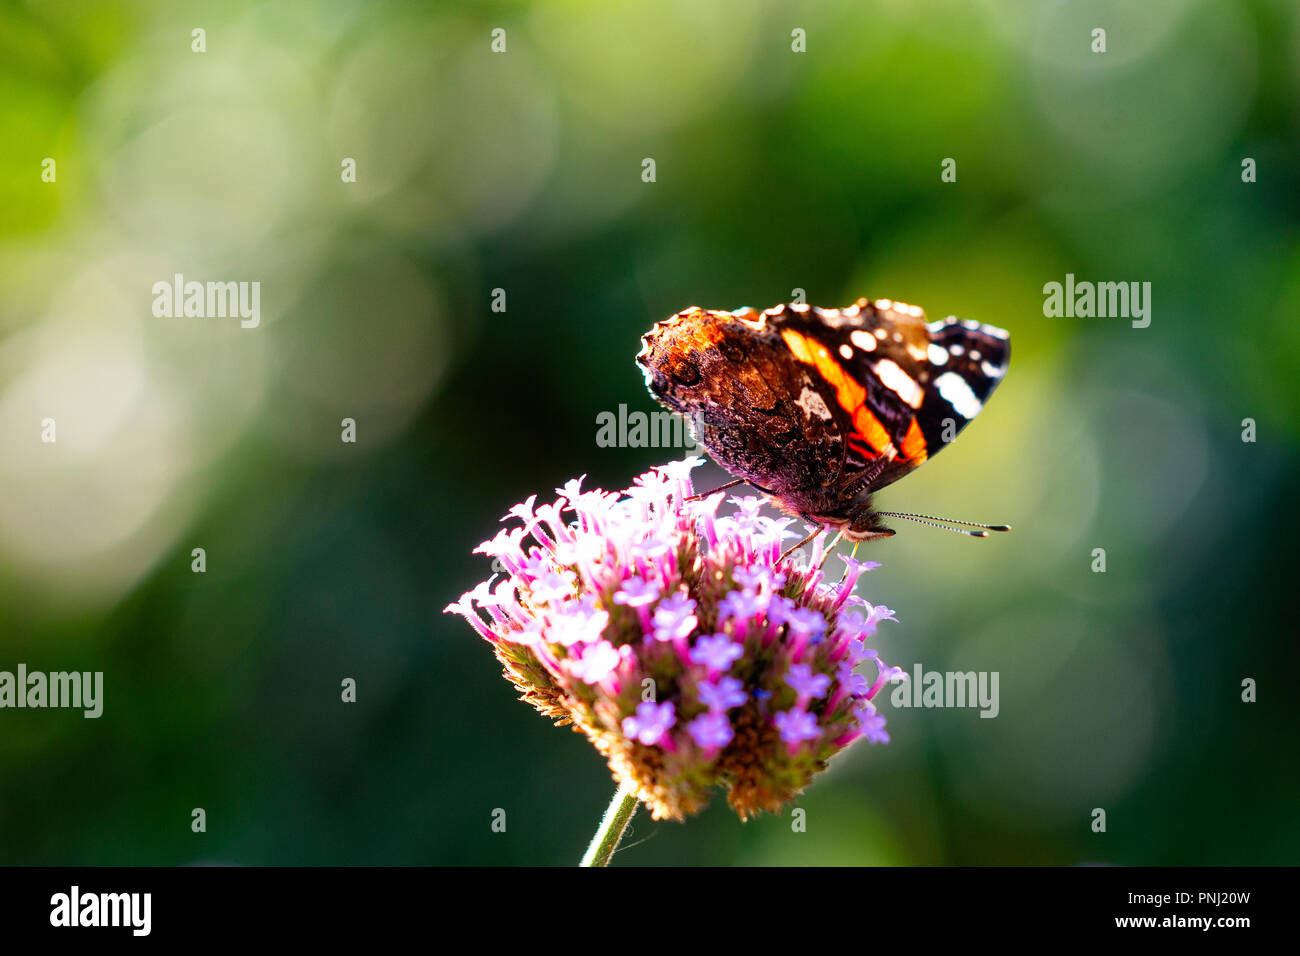 Distelfalter - Vanessa cardui-Schmetterling auf einem violetten Eisenkraut Blüte. Glatten dunklen Hintergrund. Positive Sommer Szene. Freier Platz für die Eingabe von Text Stockfoto